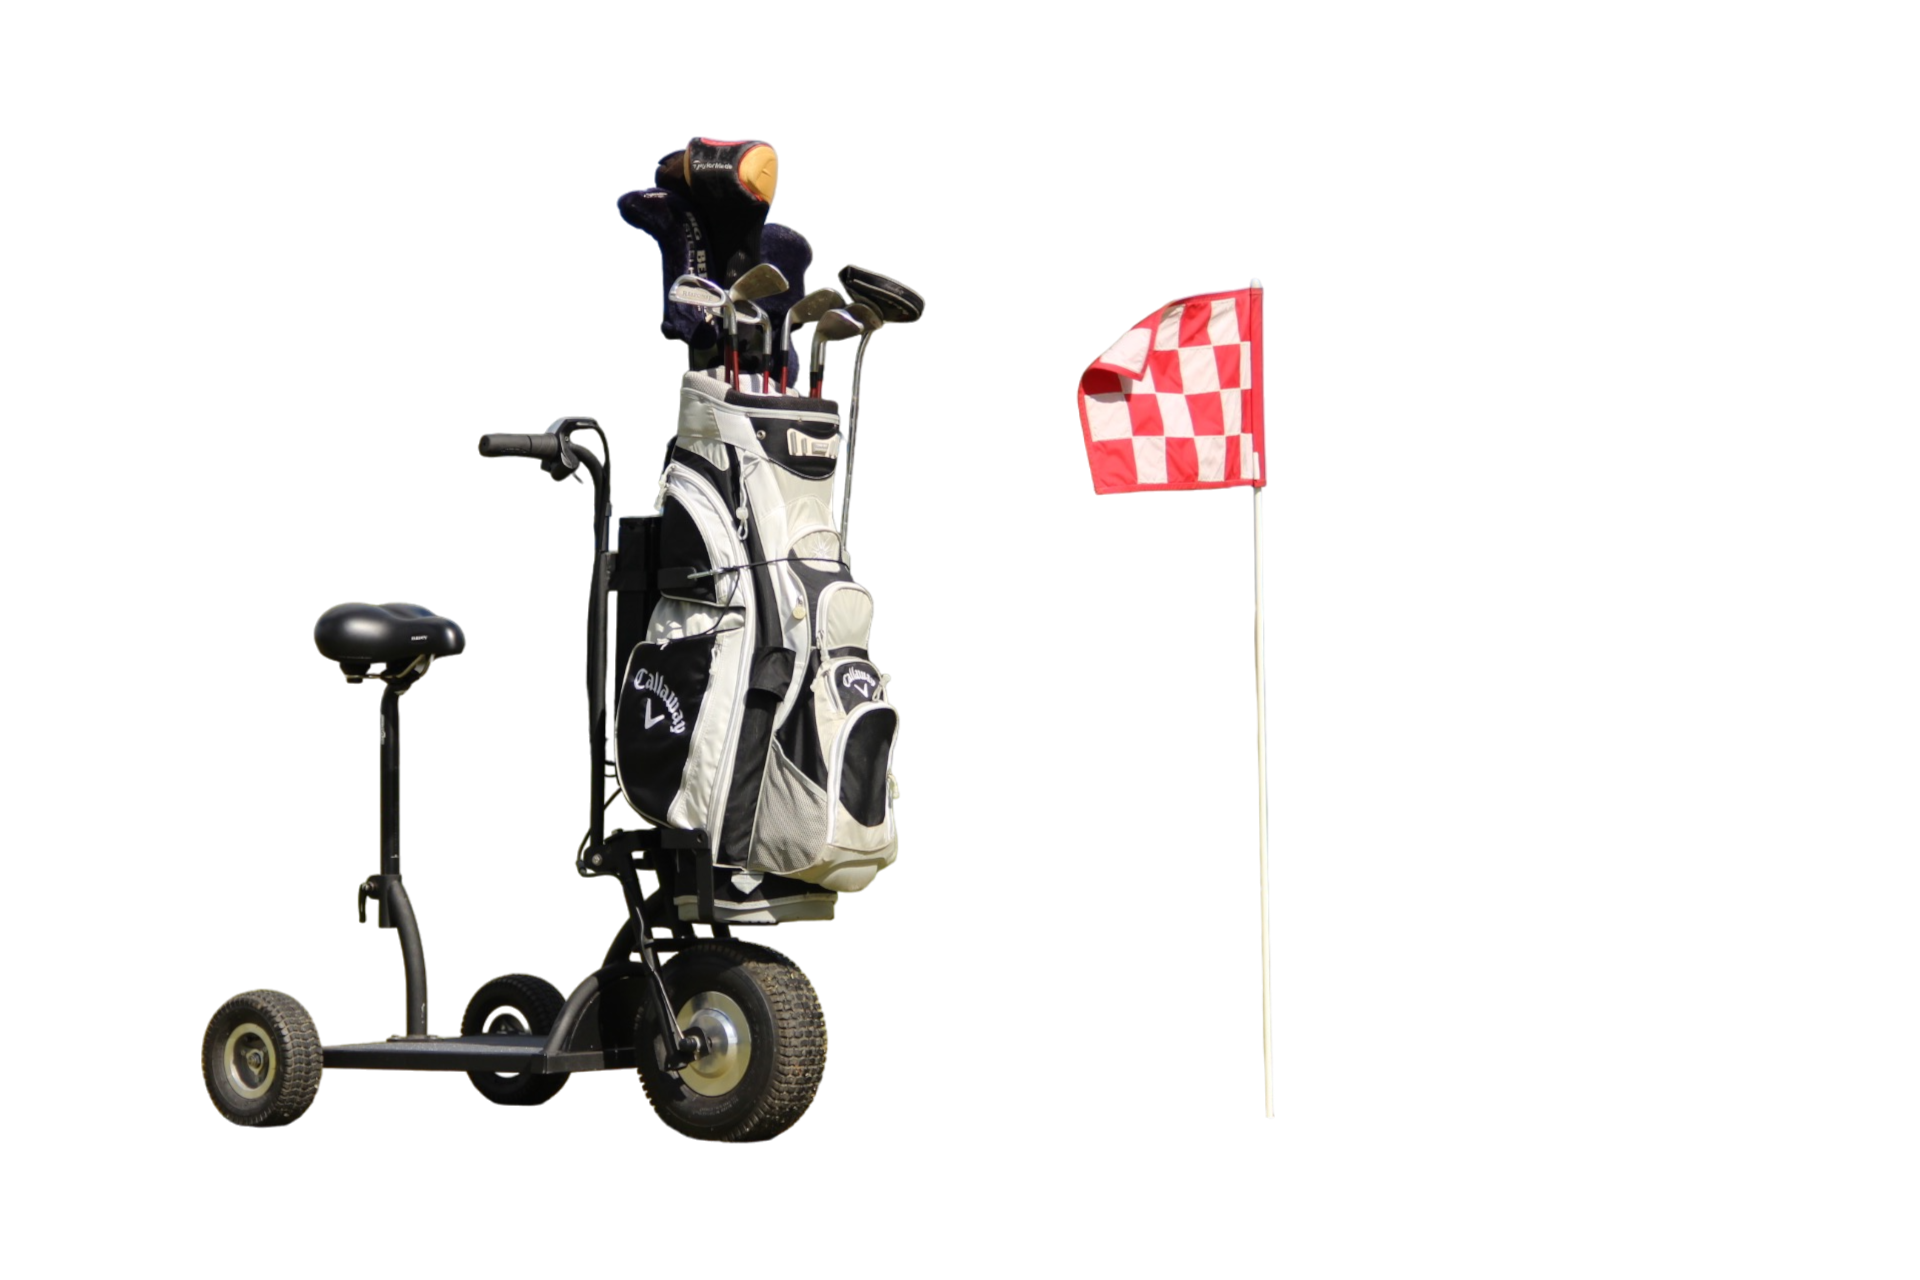 Golf Happy Scoot est une trottinette électrique spécialement conçue pour circuler sur les parcours de golf. Le véhicule est équipé d'un support rigide permettant de transporter votre matériel de golf sur le parcours